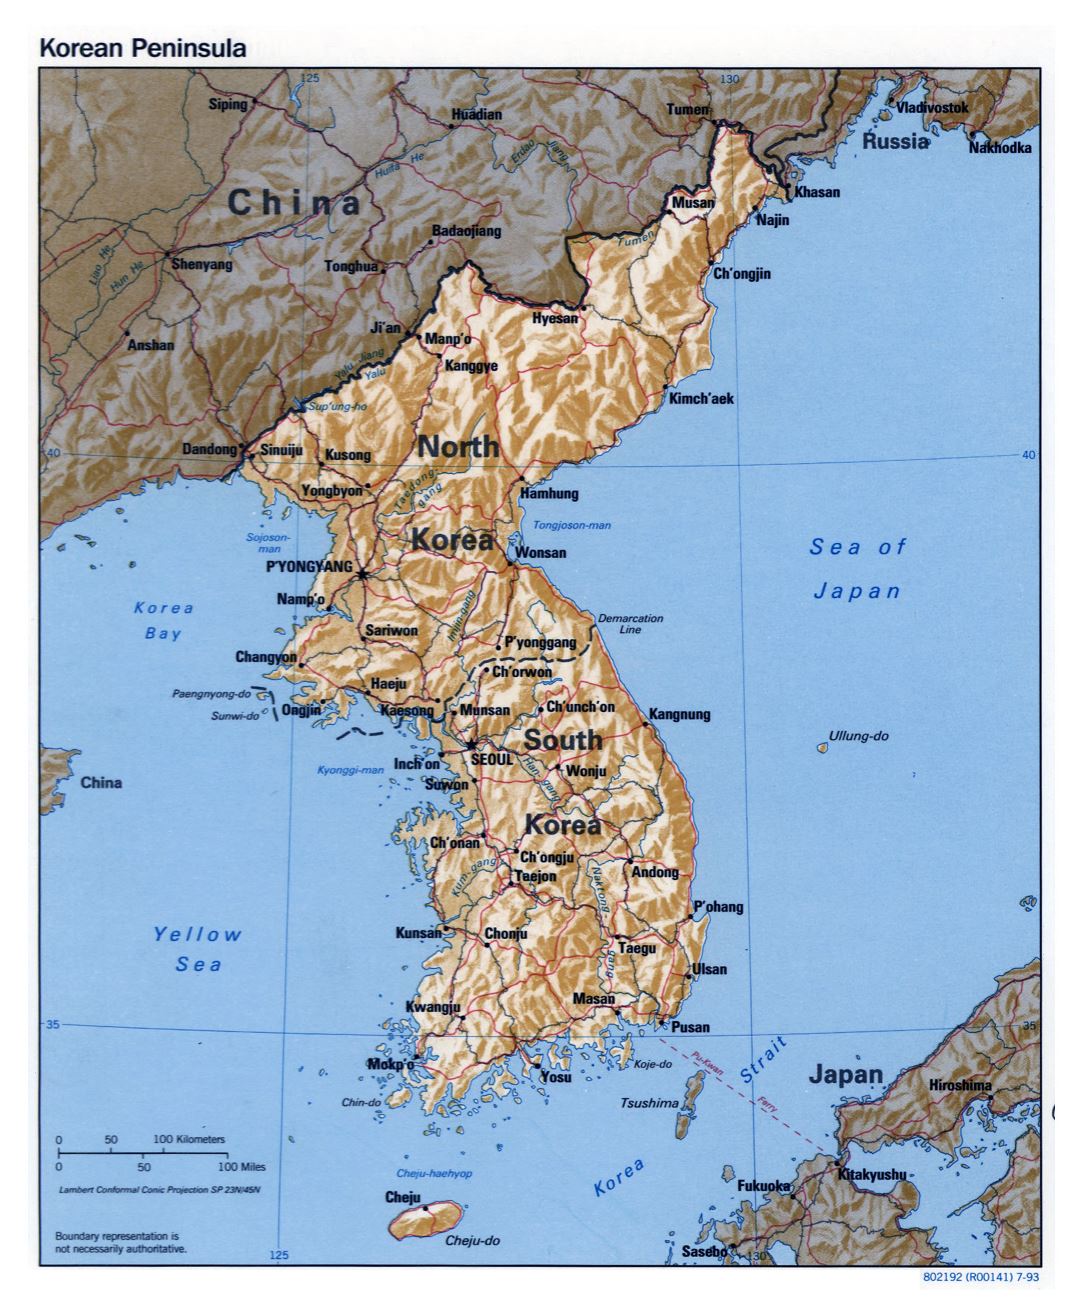 Grande detallado mapa político de la Península de Corea con relieve, carreteras, ferrocarriles y principales ciudades - 1993